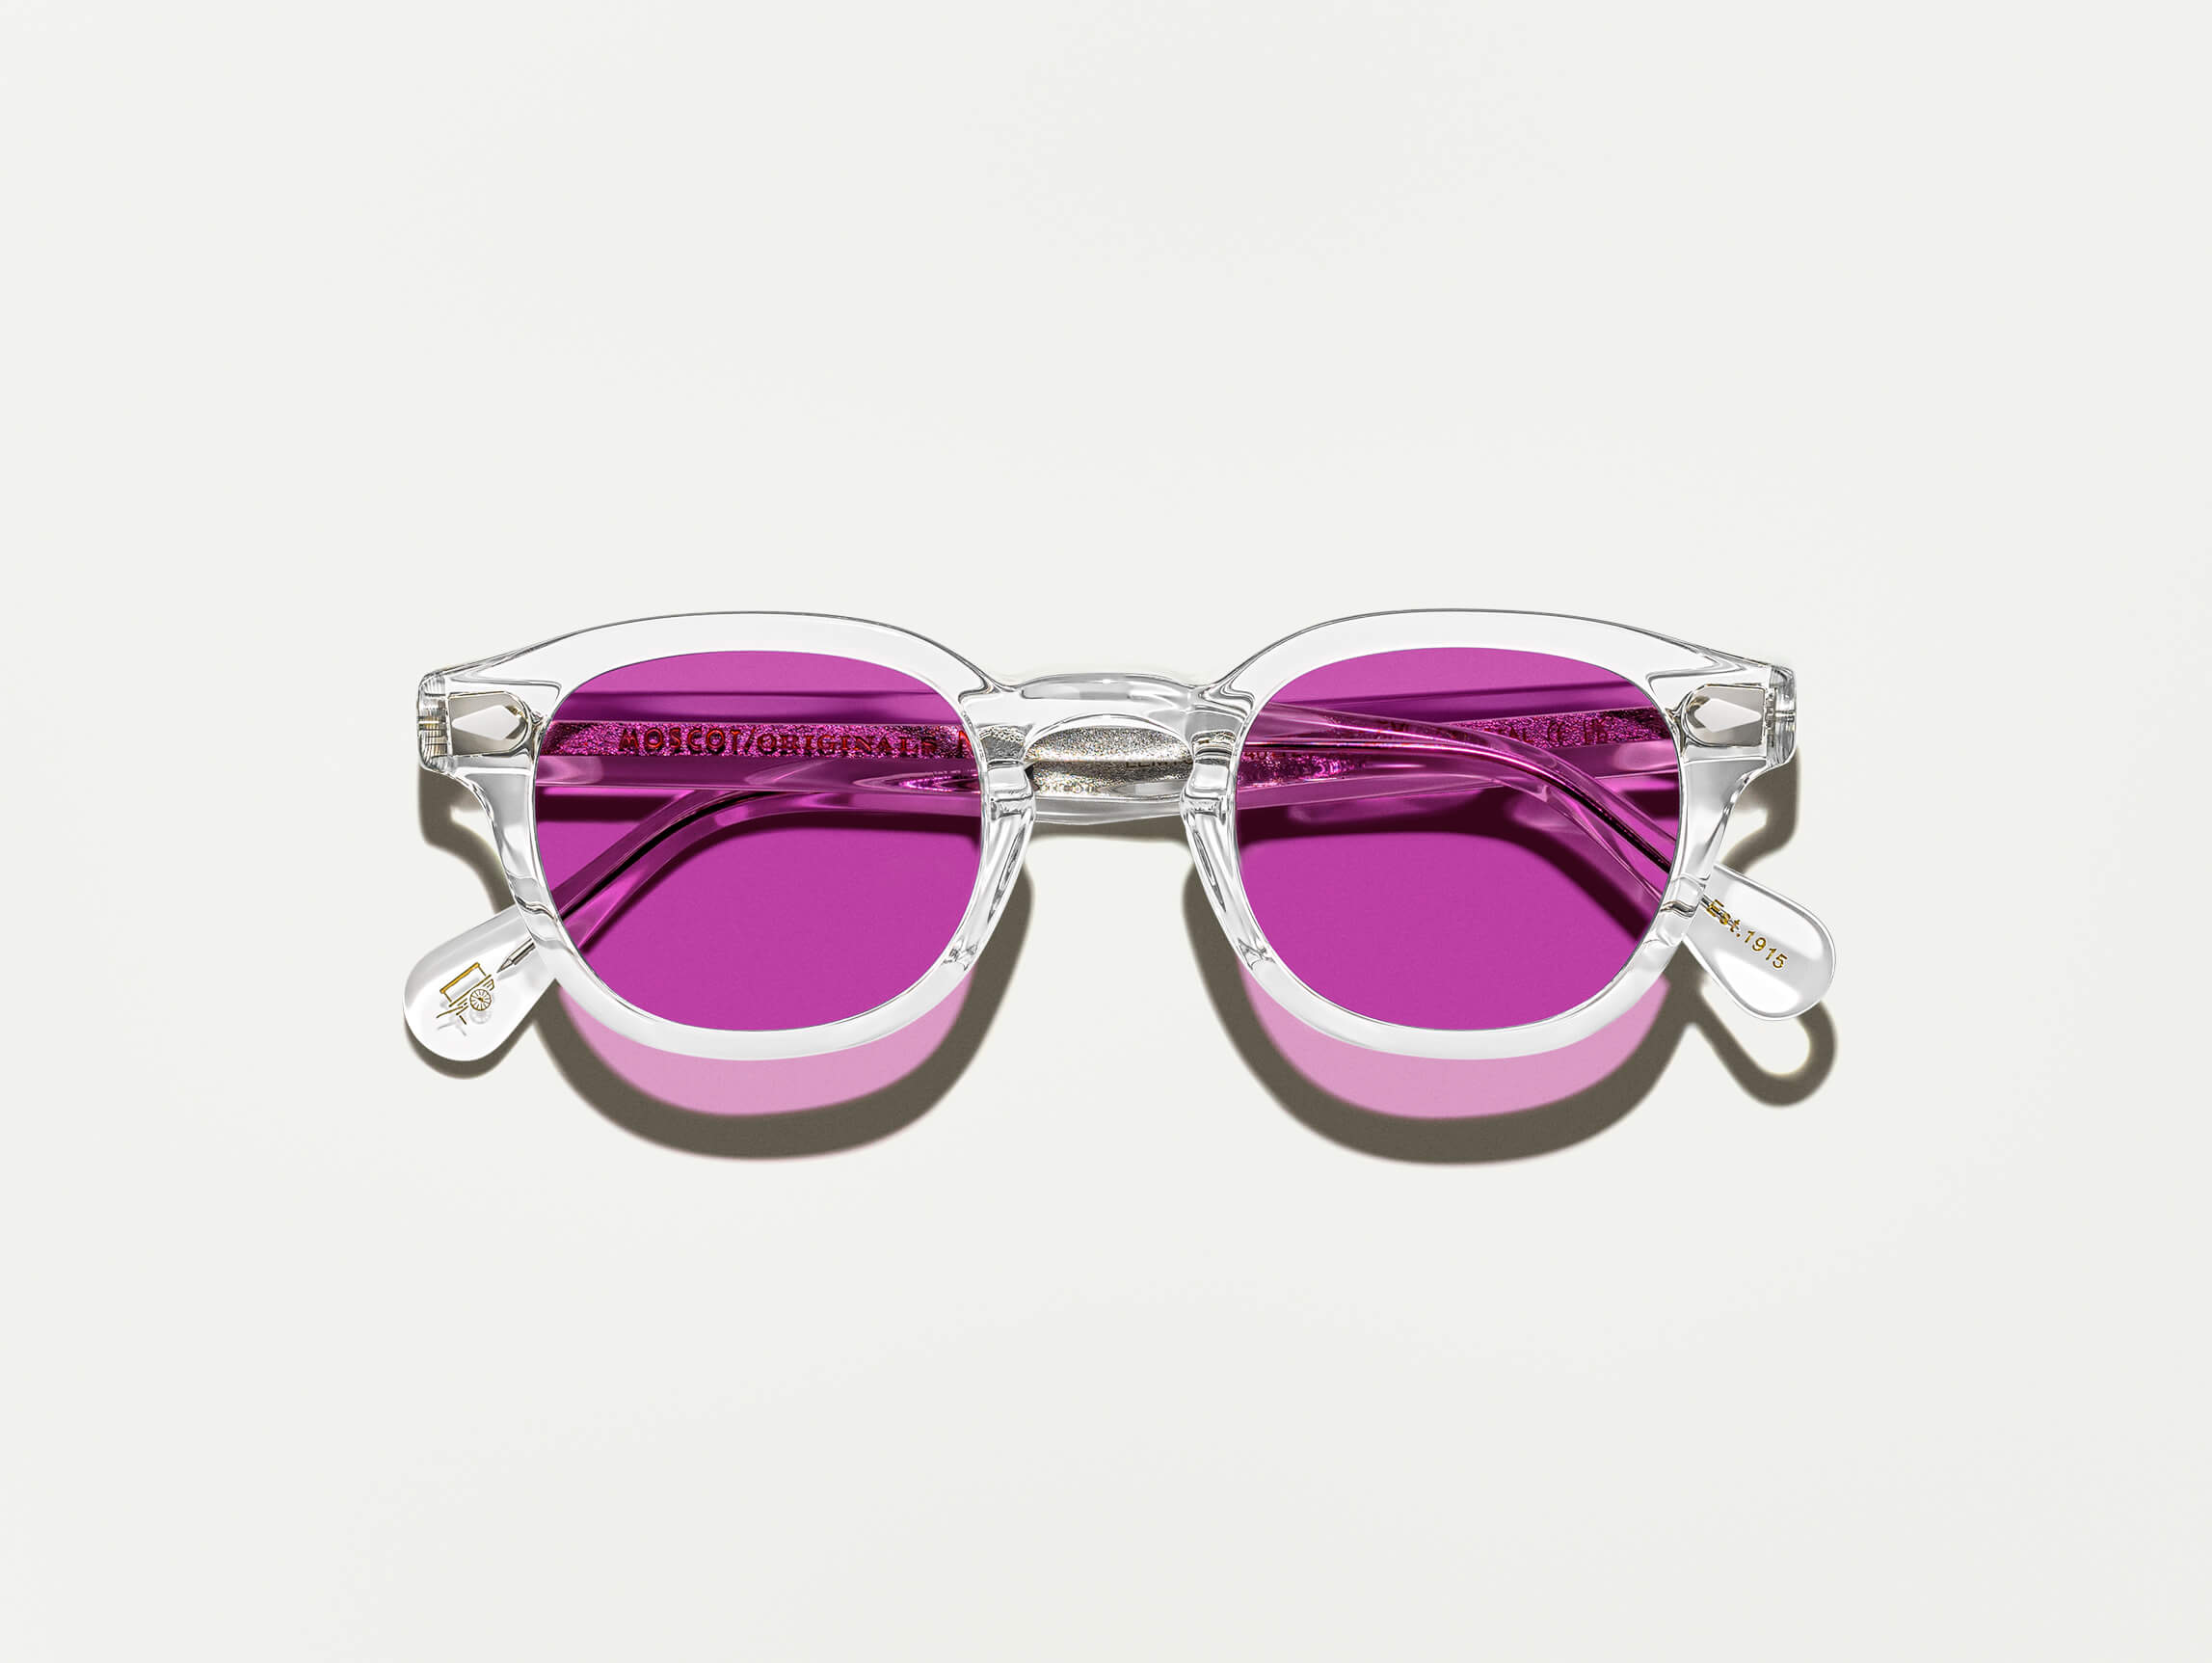 #color_purple nurple | The LEMTOSH Crystal with Purple Nurple Tinted Lenses